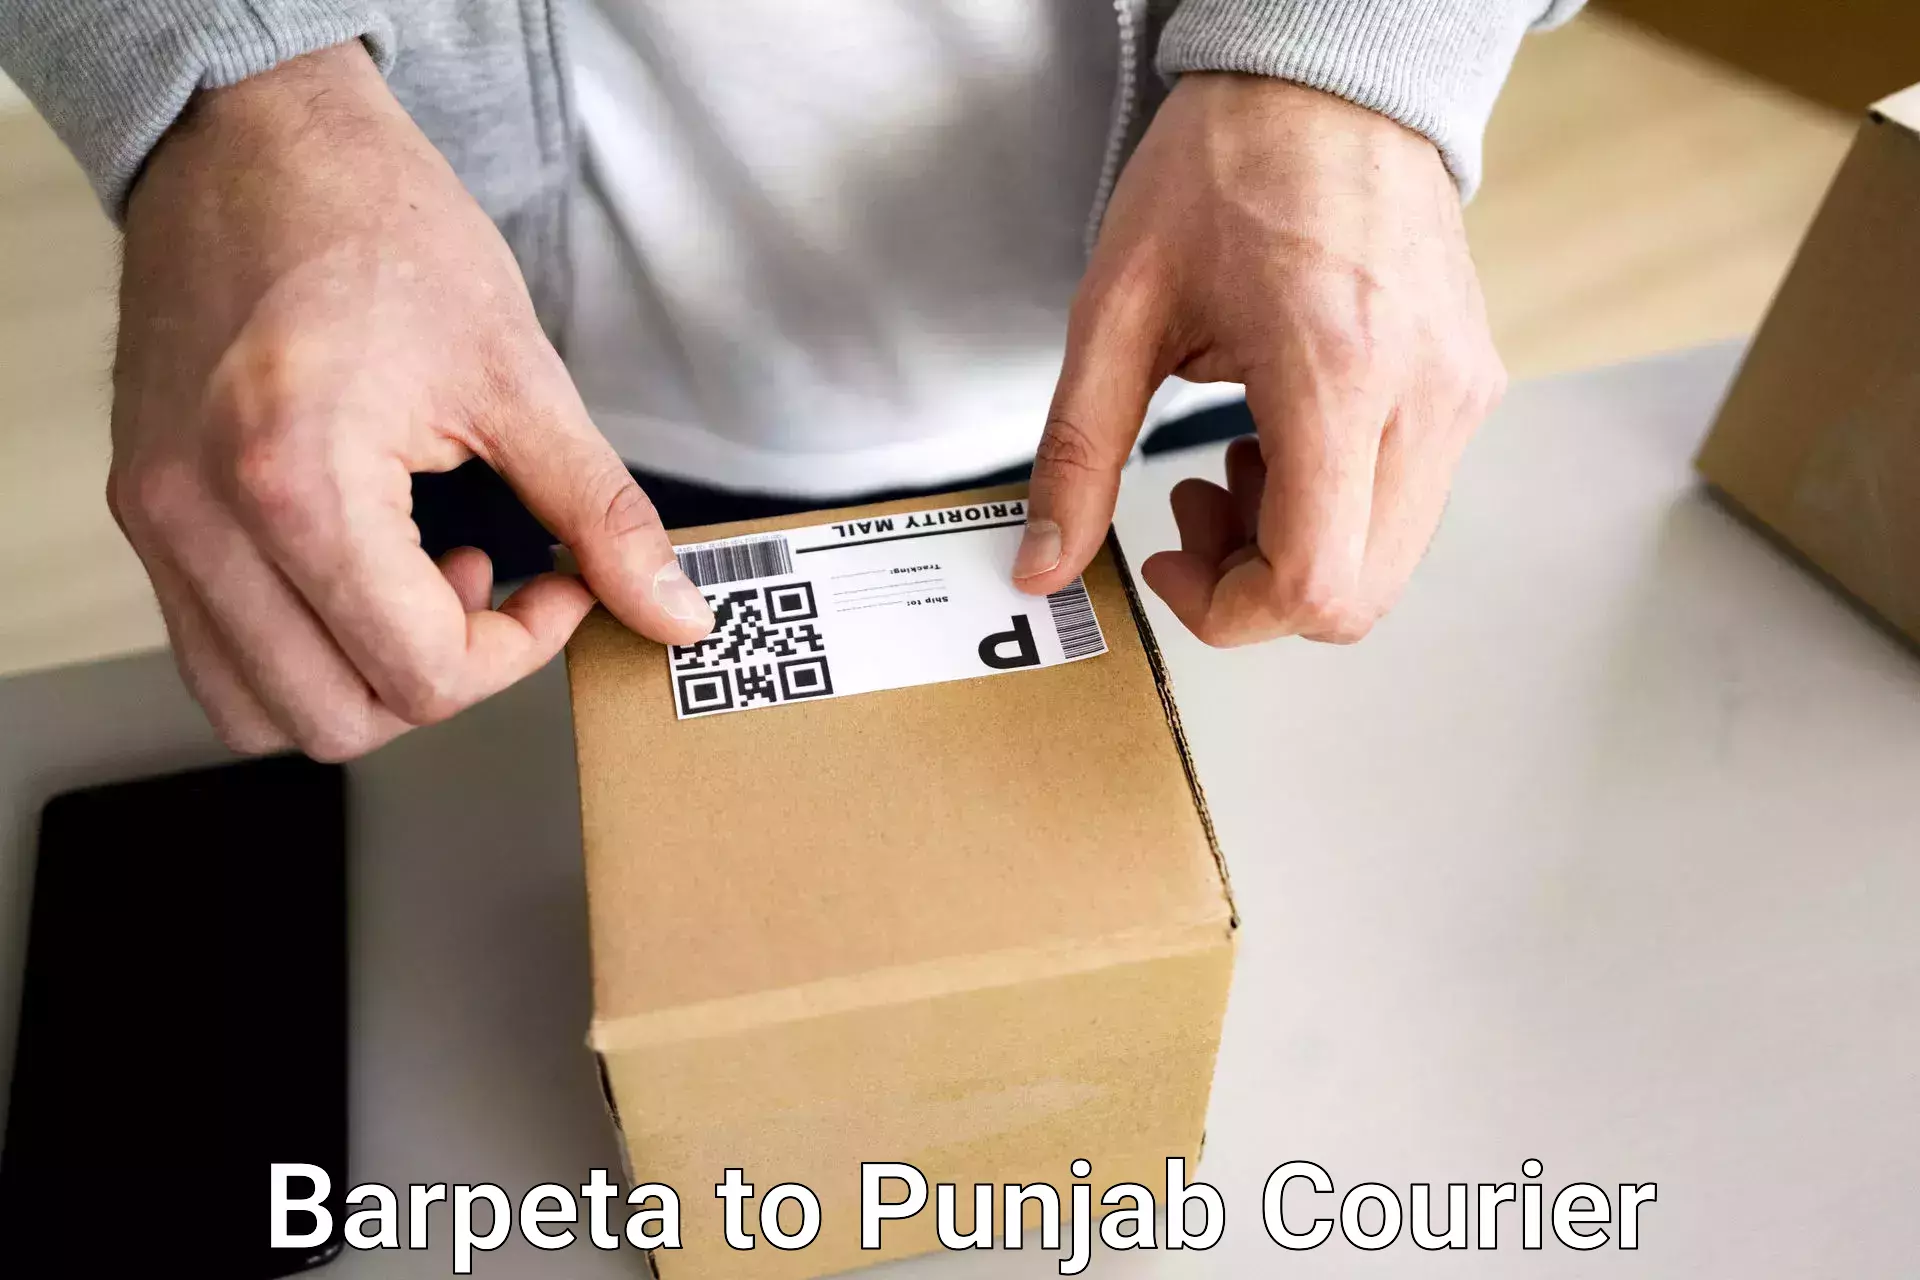 Baggage transport professionals Barpeta to Punjab